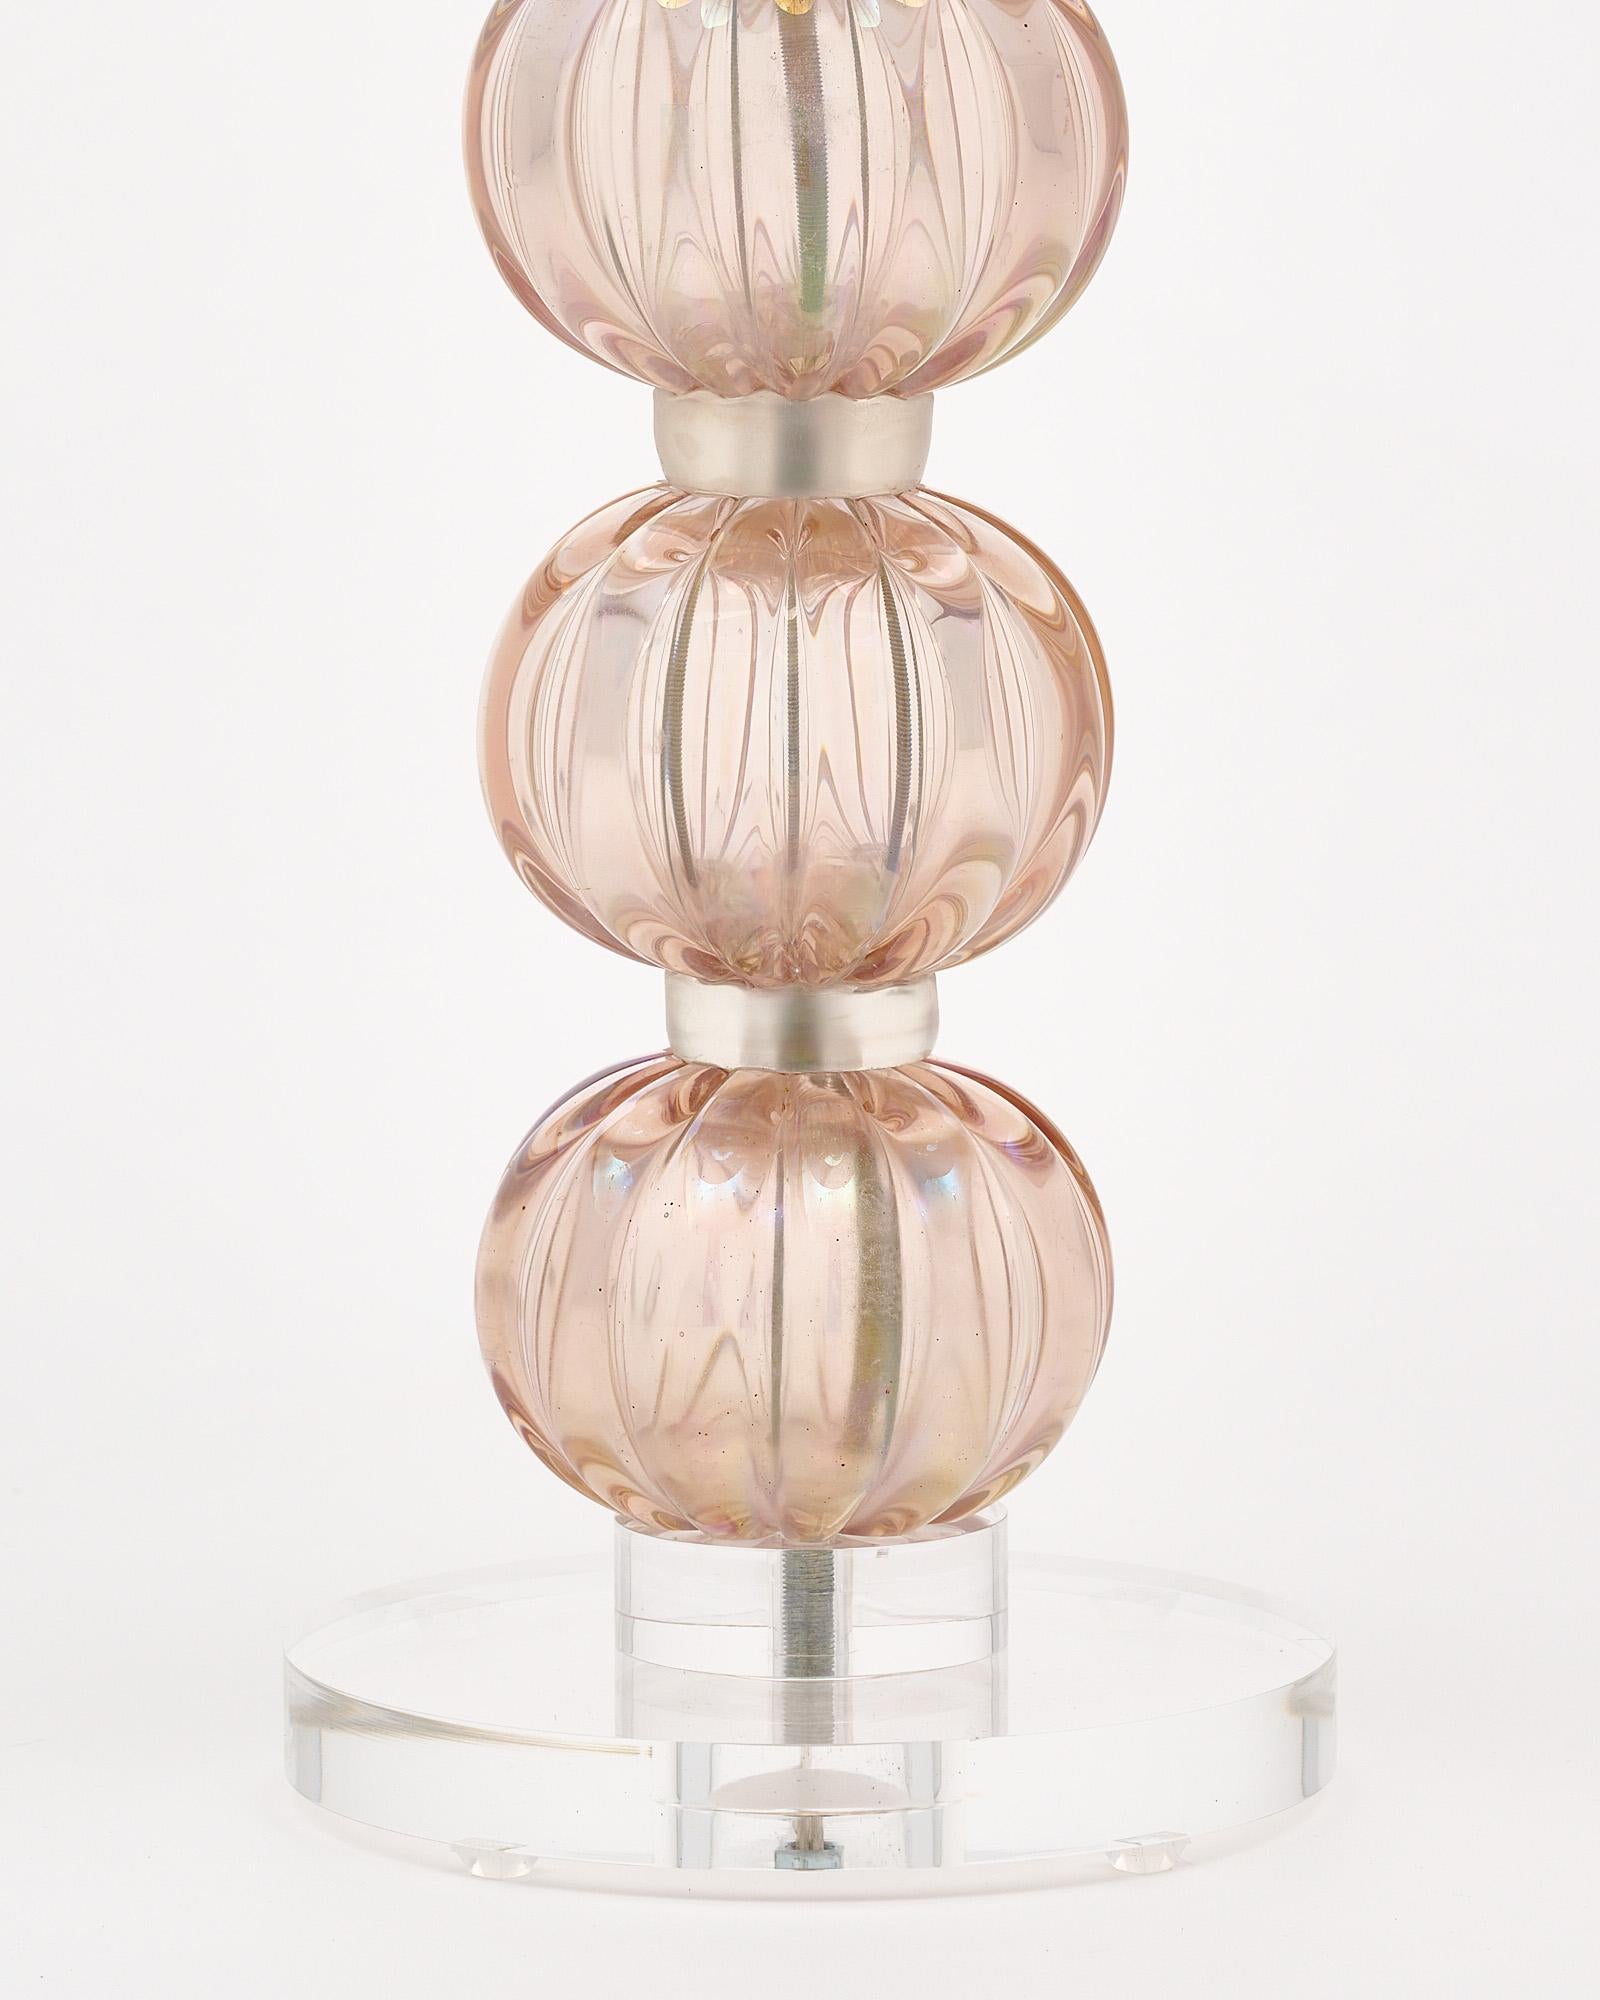 Lampe unique de Murano, Italie, en verre irisé soufflé à la main de couleur rose pâle. Le verre repose sur une base en Lucite. Il a été nouvellement câblé pour répondre aux normes américaines.